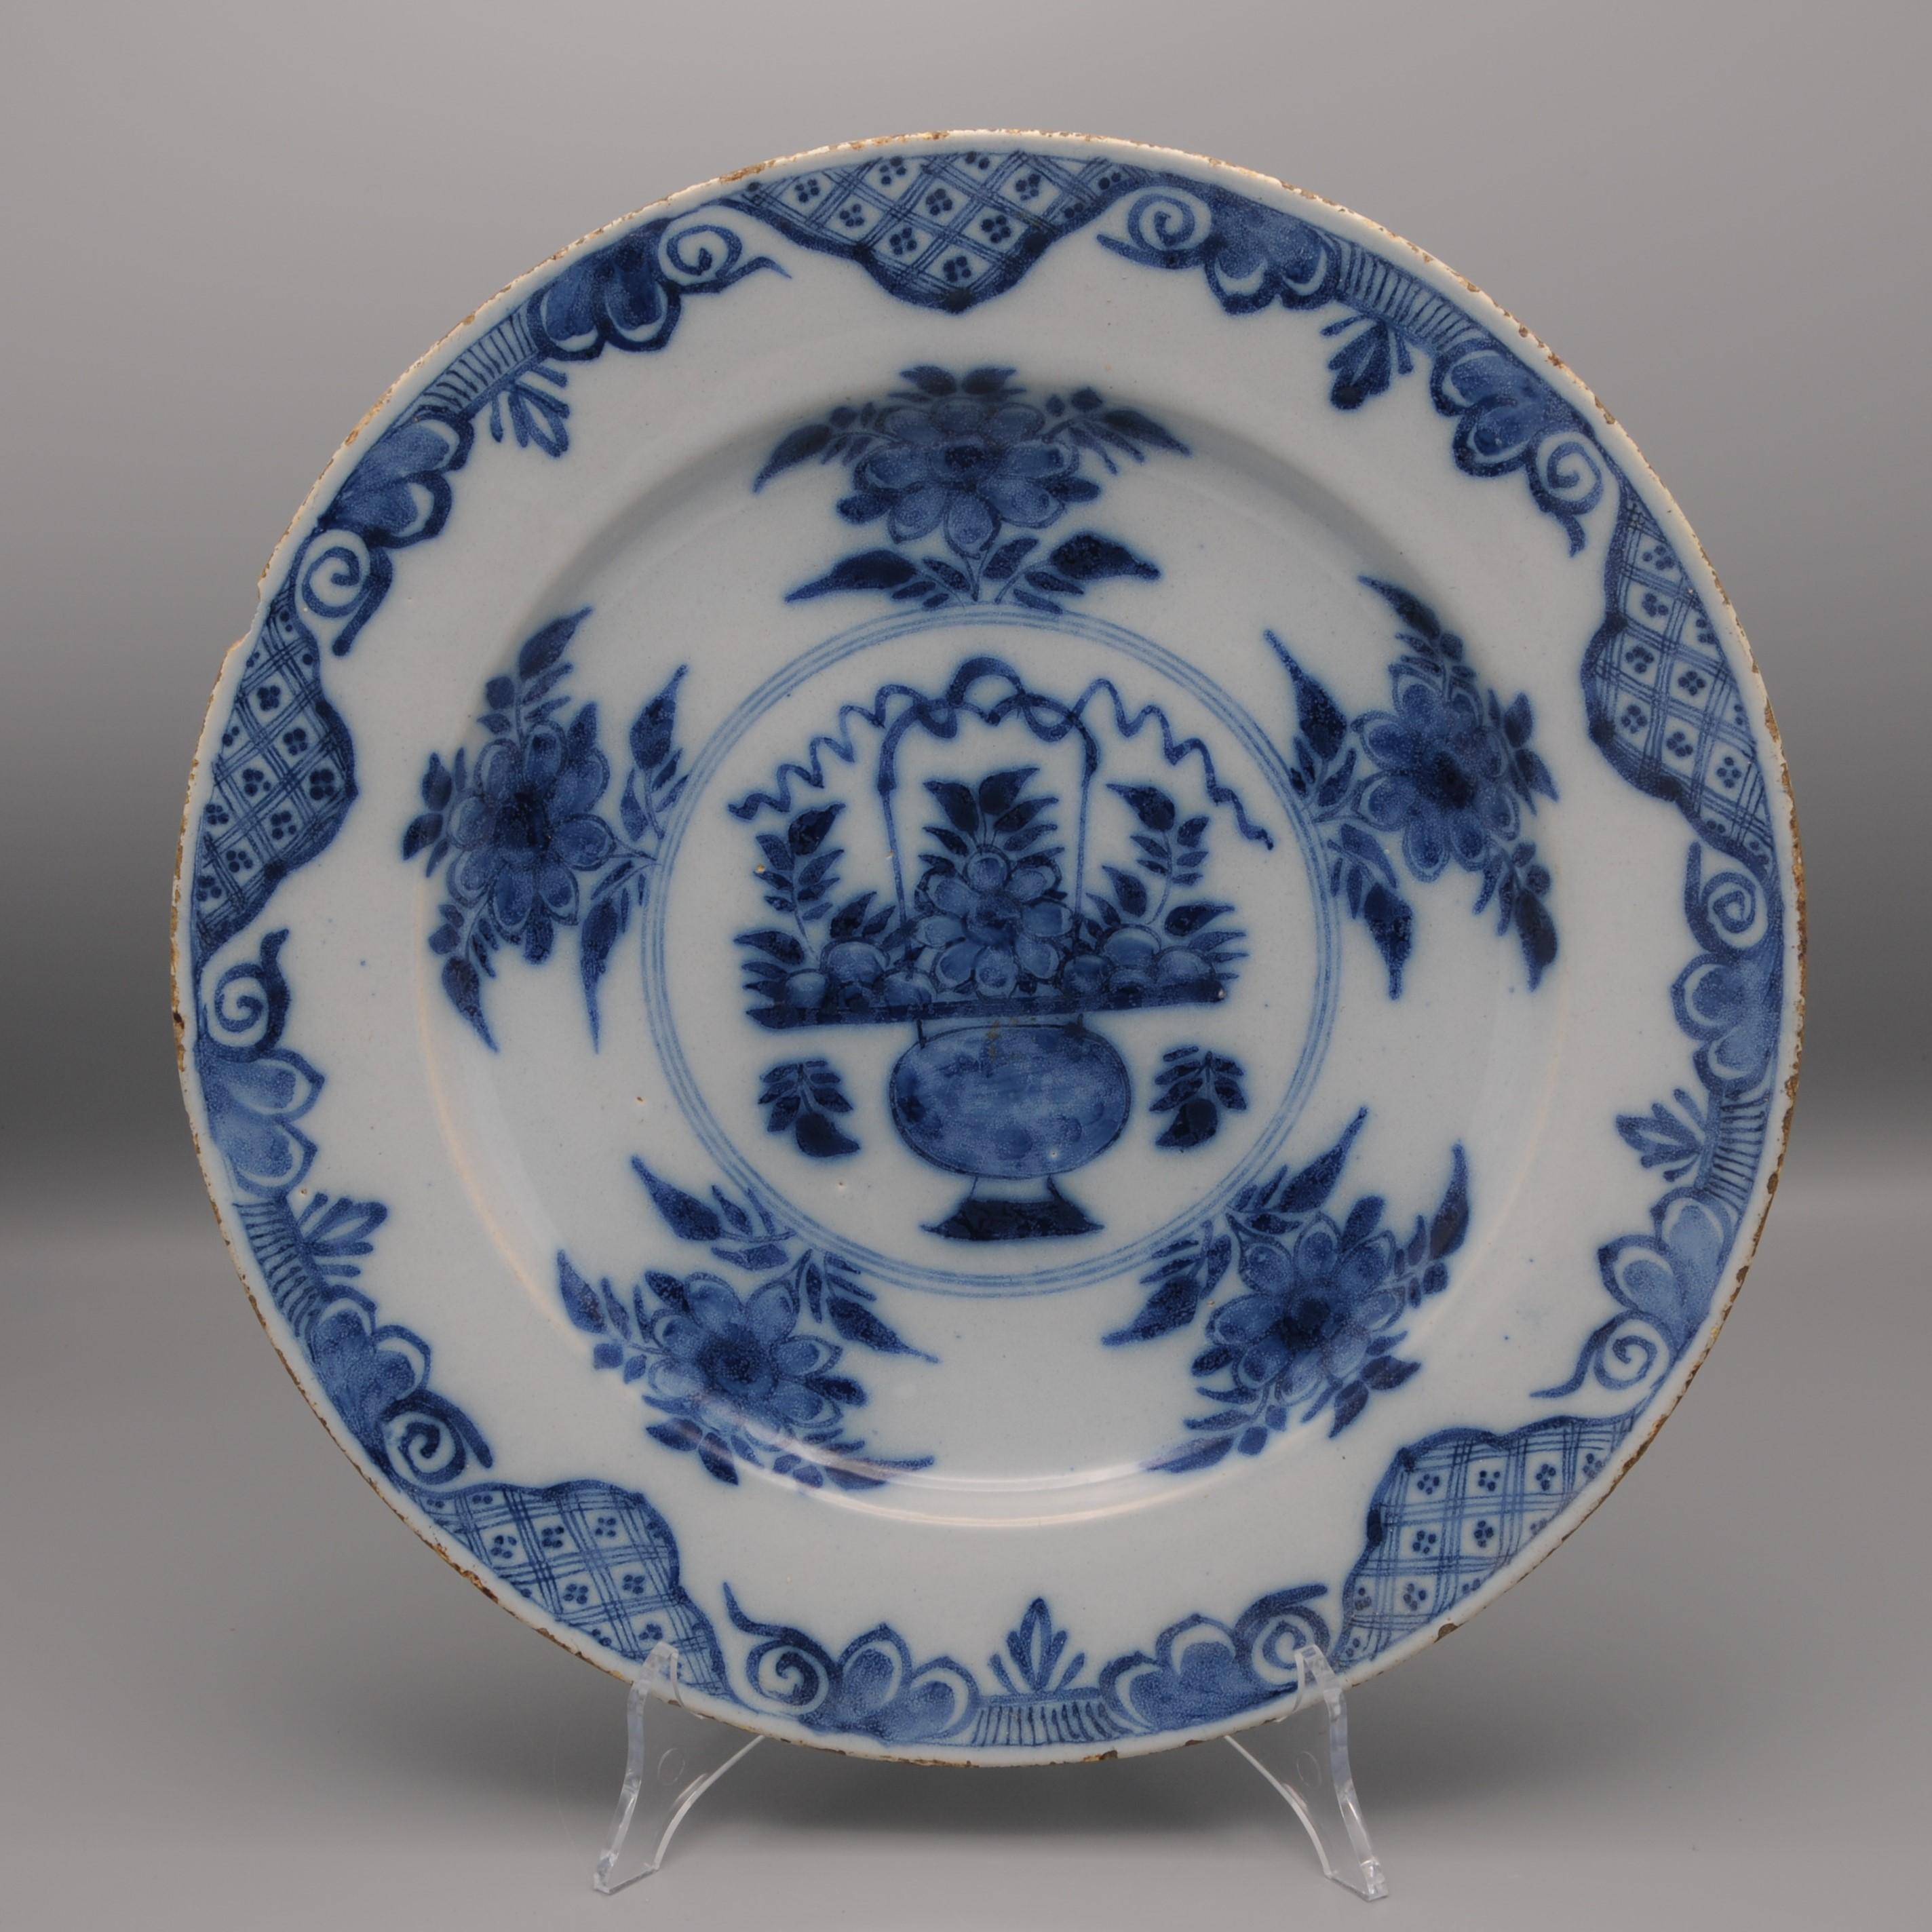 Mitte des 18. Jahrhunderts Blaue Delfter Porzellanplatte mit Chinoiserie-Dekor eines blühenden Korbes inmitten von Blumenzweigen
Schöne Randverzierung mit reichem Laub, Blumen und Schnörkeln.
Unmarkiert
Gute Qualität der Malerei
Guter Zustand; nur